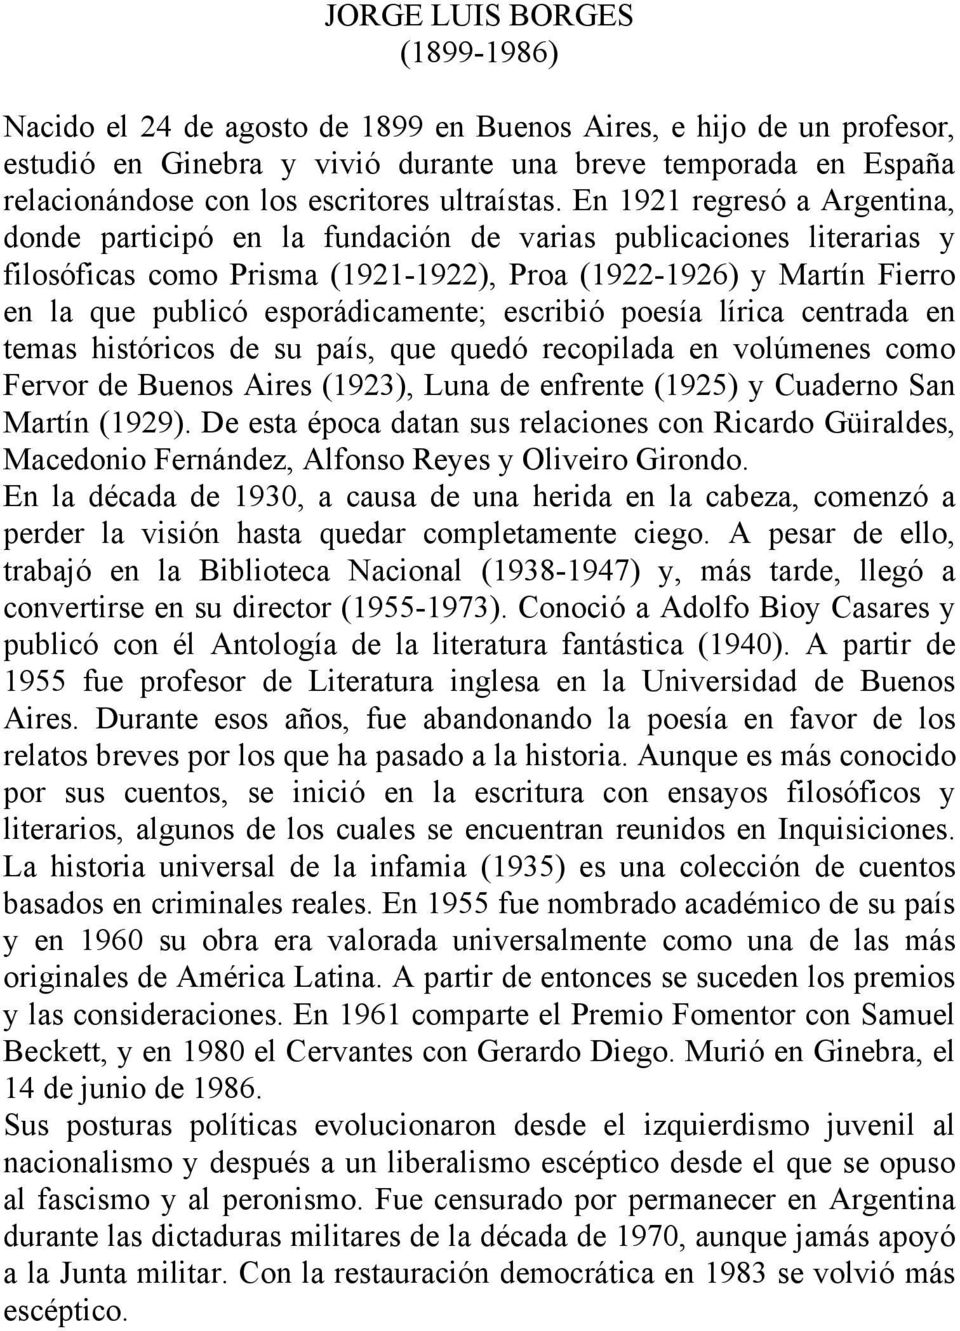 En 1921 regresó a Argentina, donde participó en la fundación de varias publicaciones literarias y filosóficas como Prisma (1921-1922), Proa (1922-1926) y Martín Fierro en la que publicó